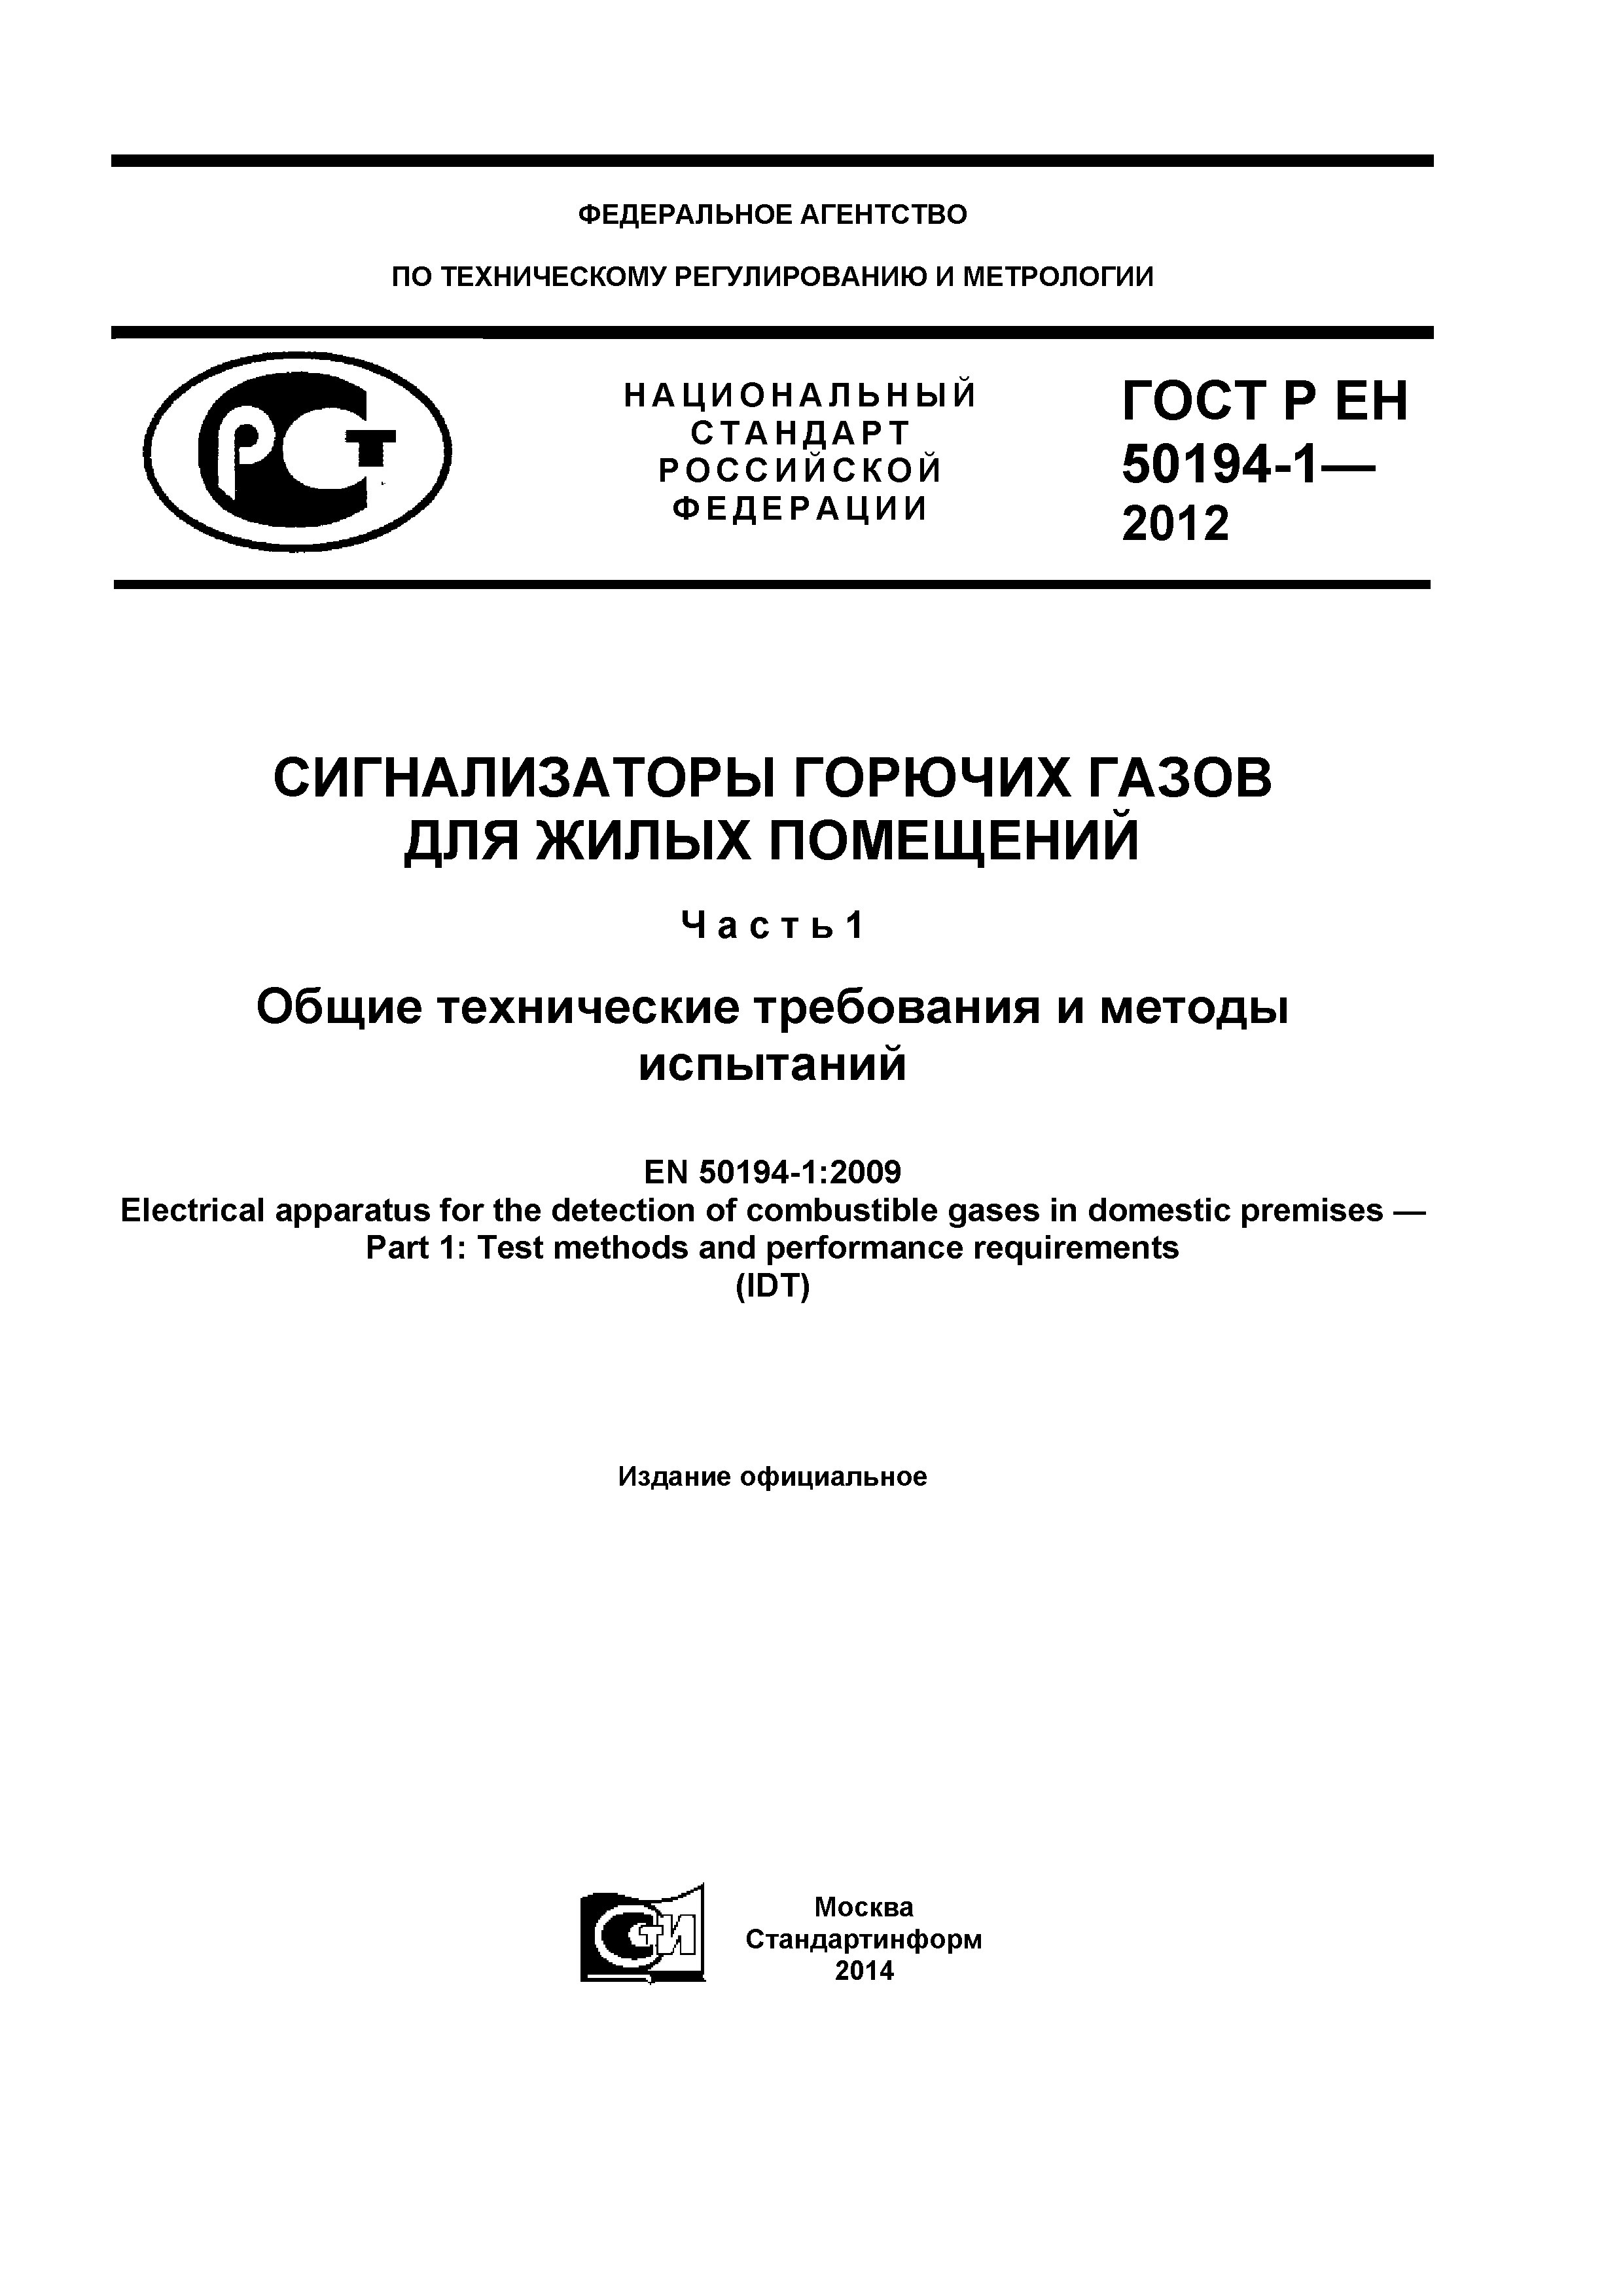 ГОСТ Р ЕН 50194-1-2012